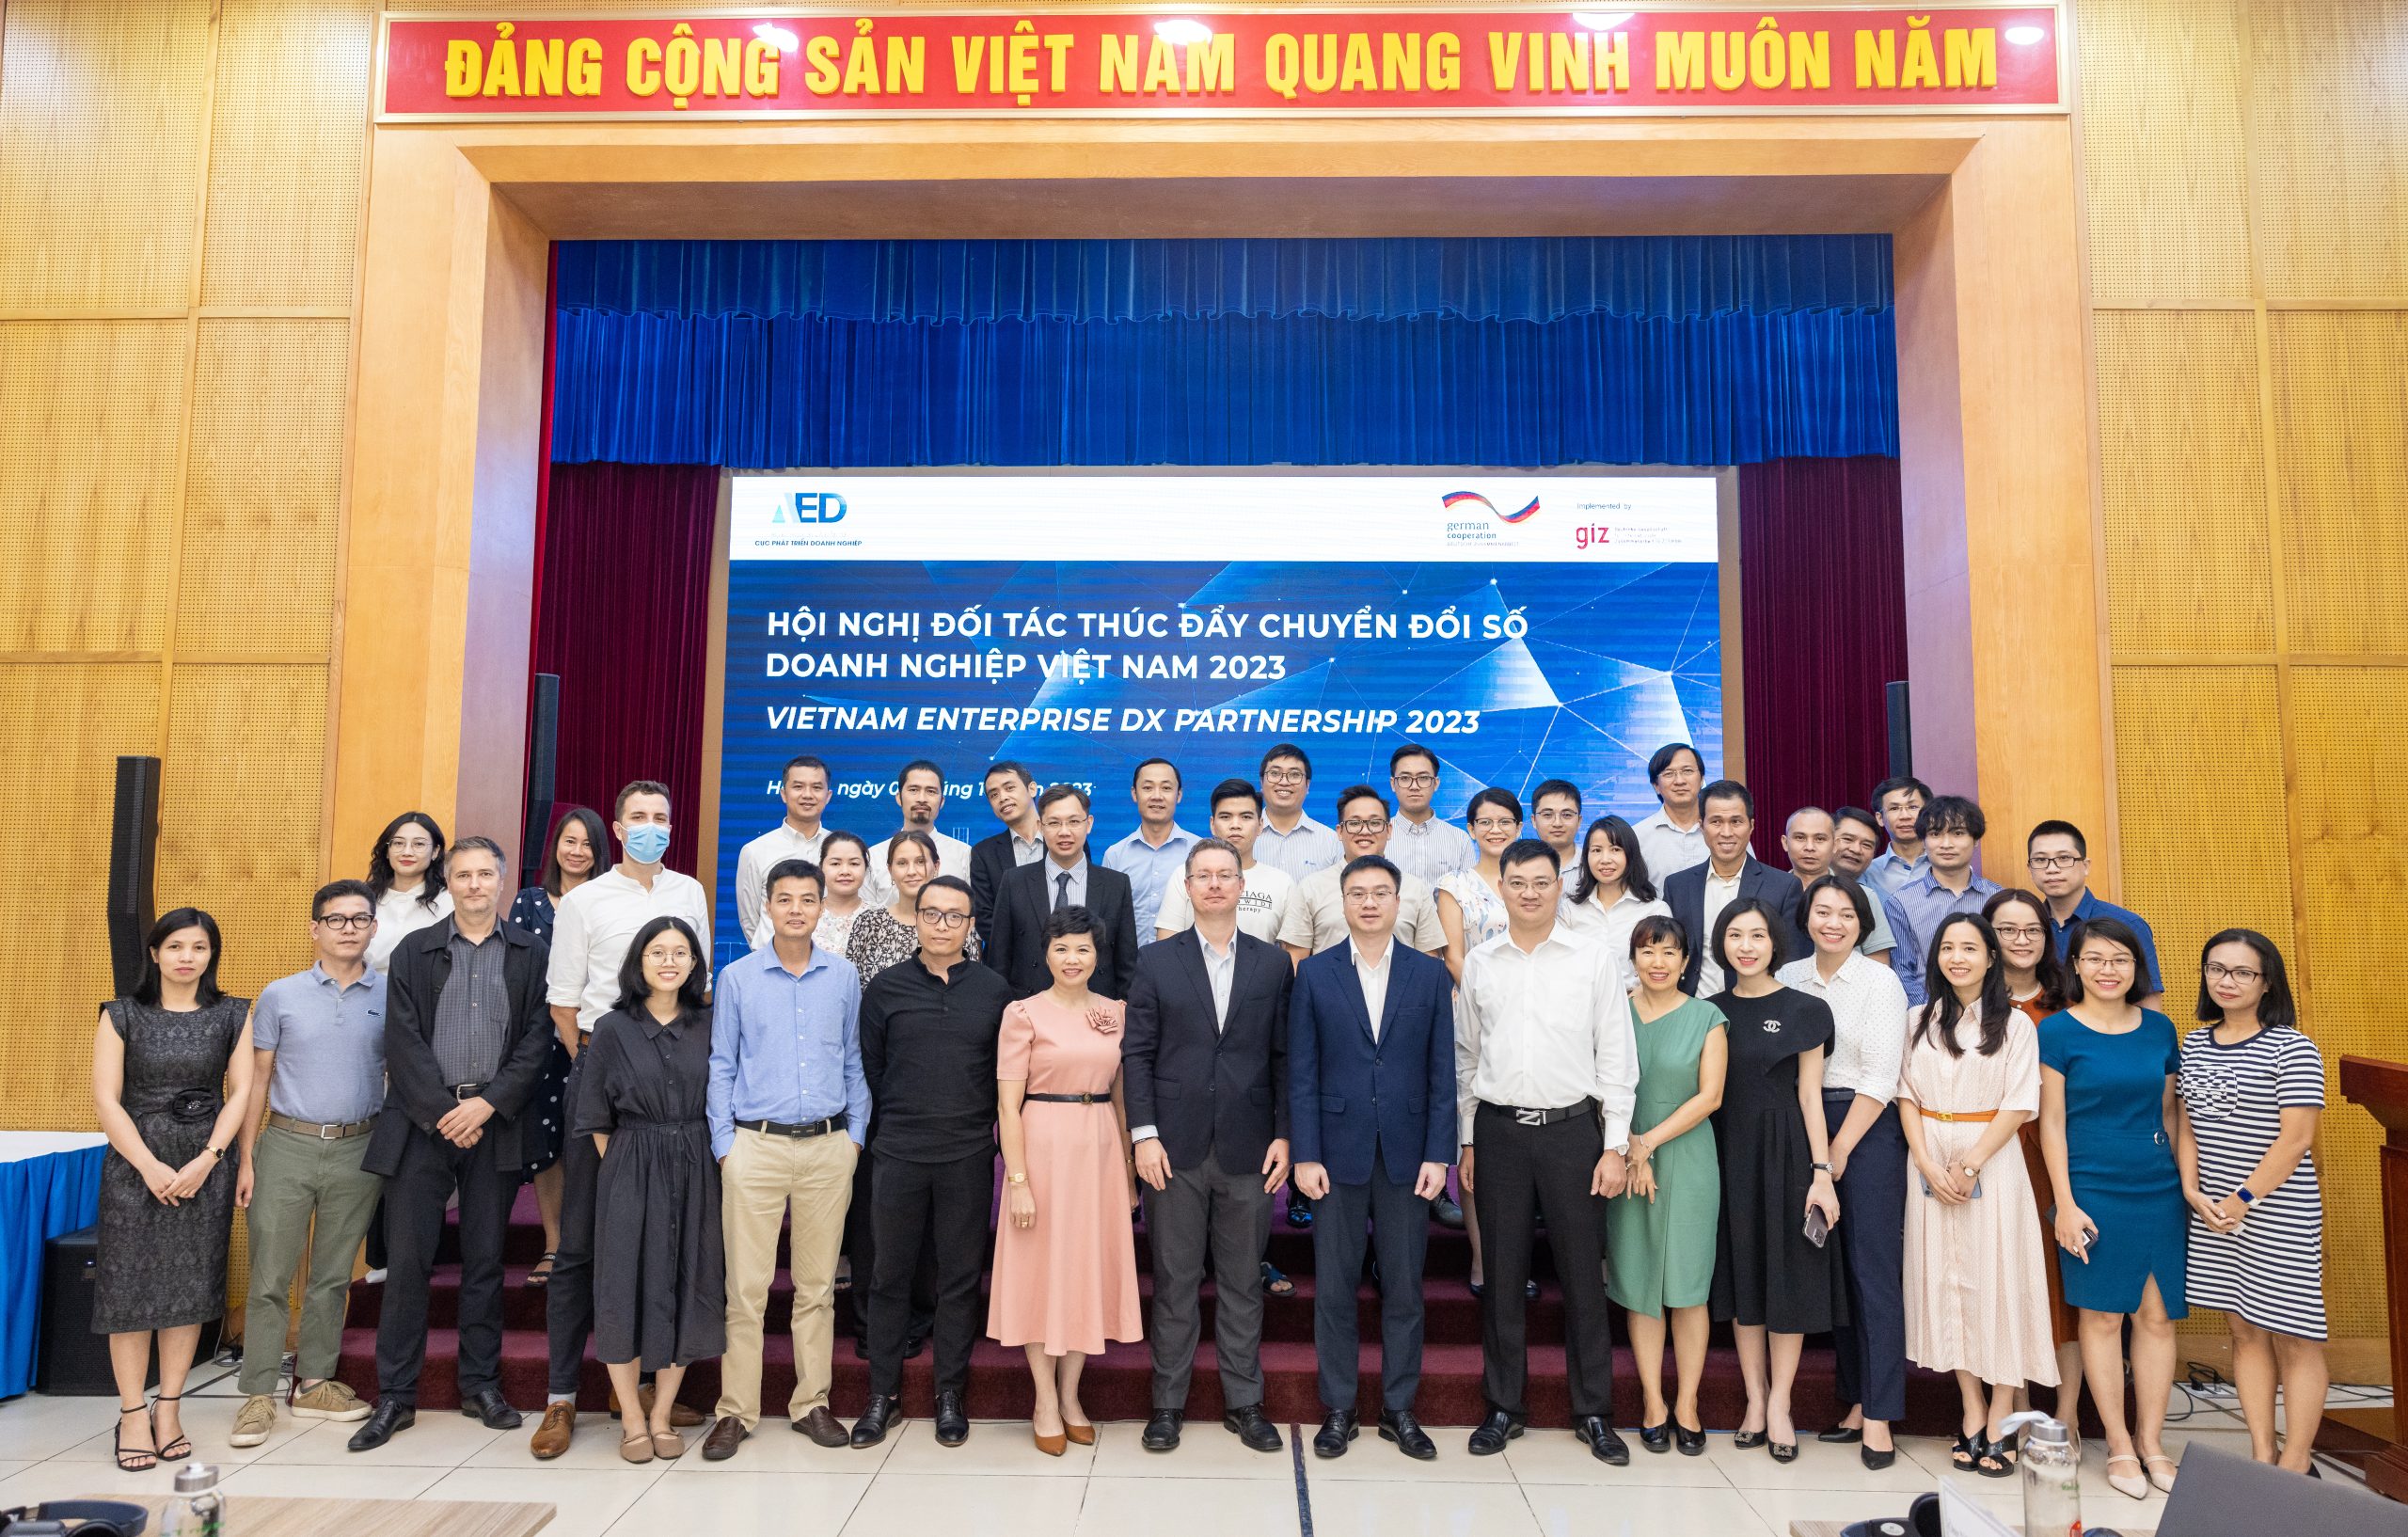 Hội nghị đối tác thúc đẩy chuyển đổi số doanh nghiệp việt nam 2023 – Vietnam enterprise DX partnership 2023 (VEDPS)